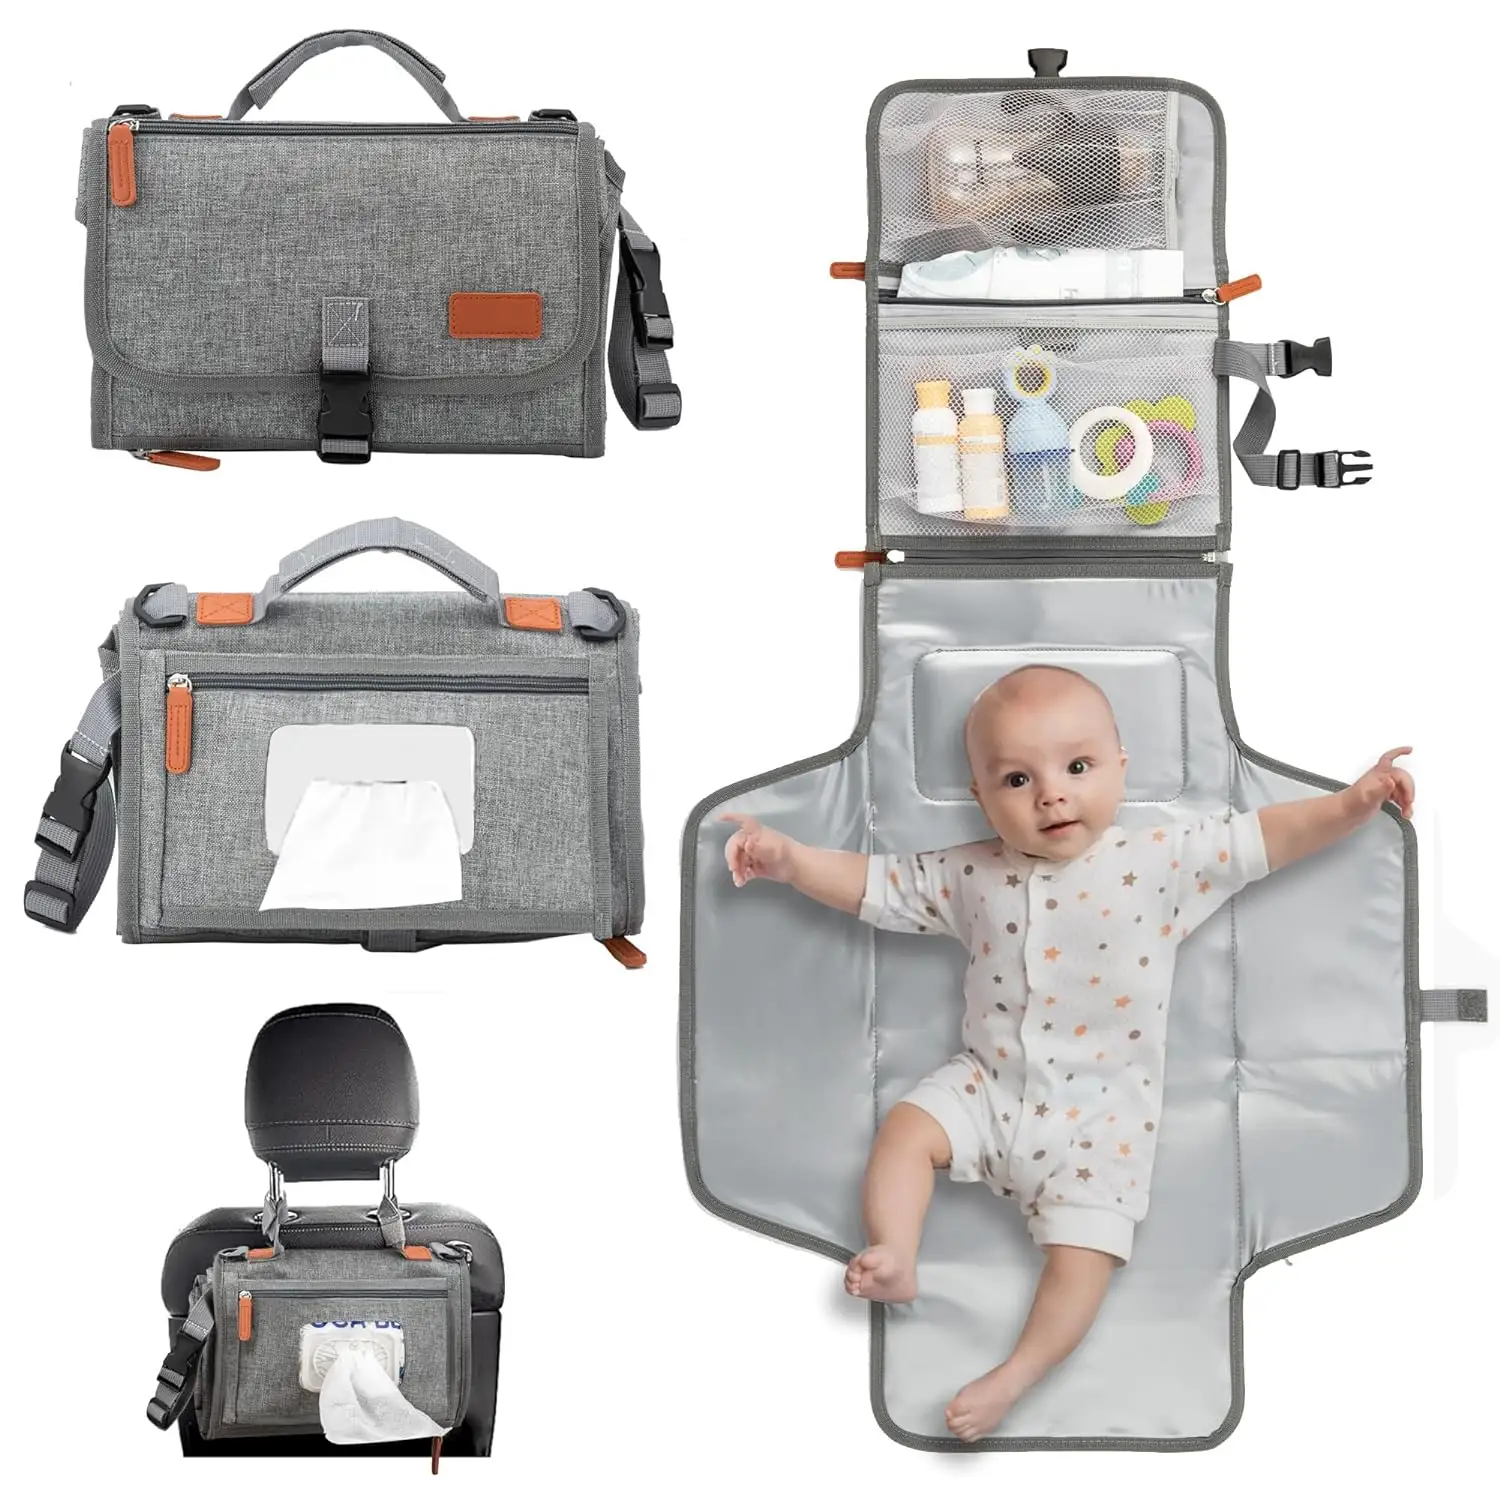 Vente chaude voyage bébé portable matelas à langer sac étanche bébé couche matelas à langer